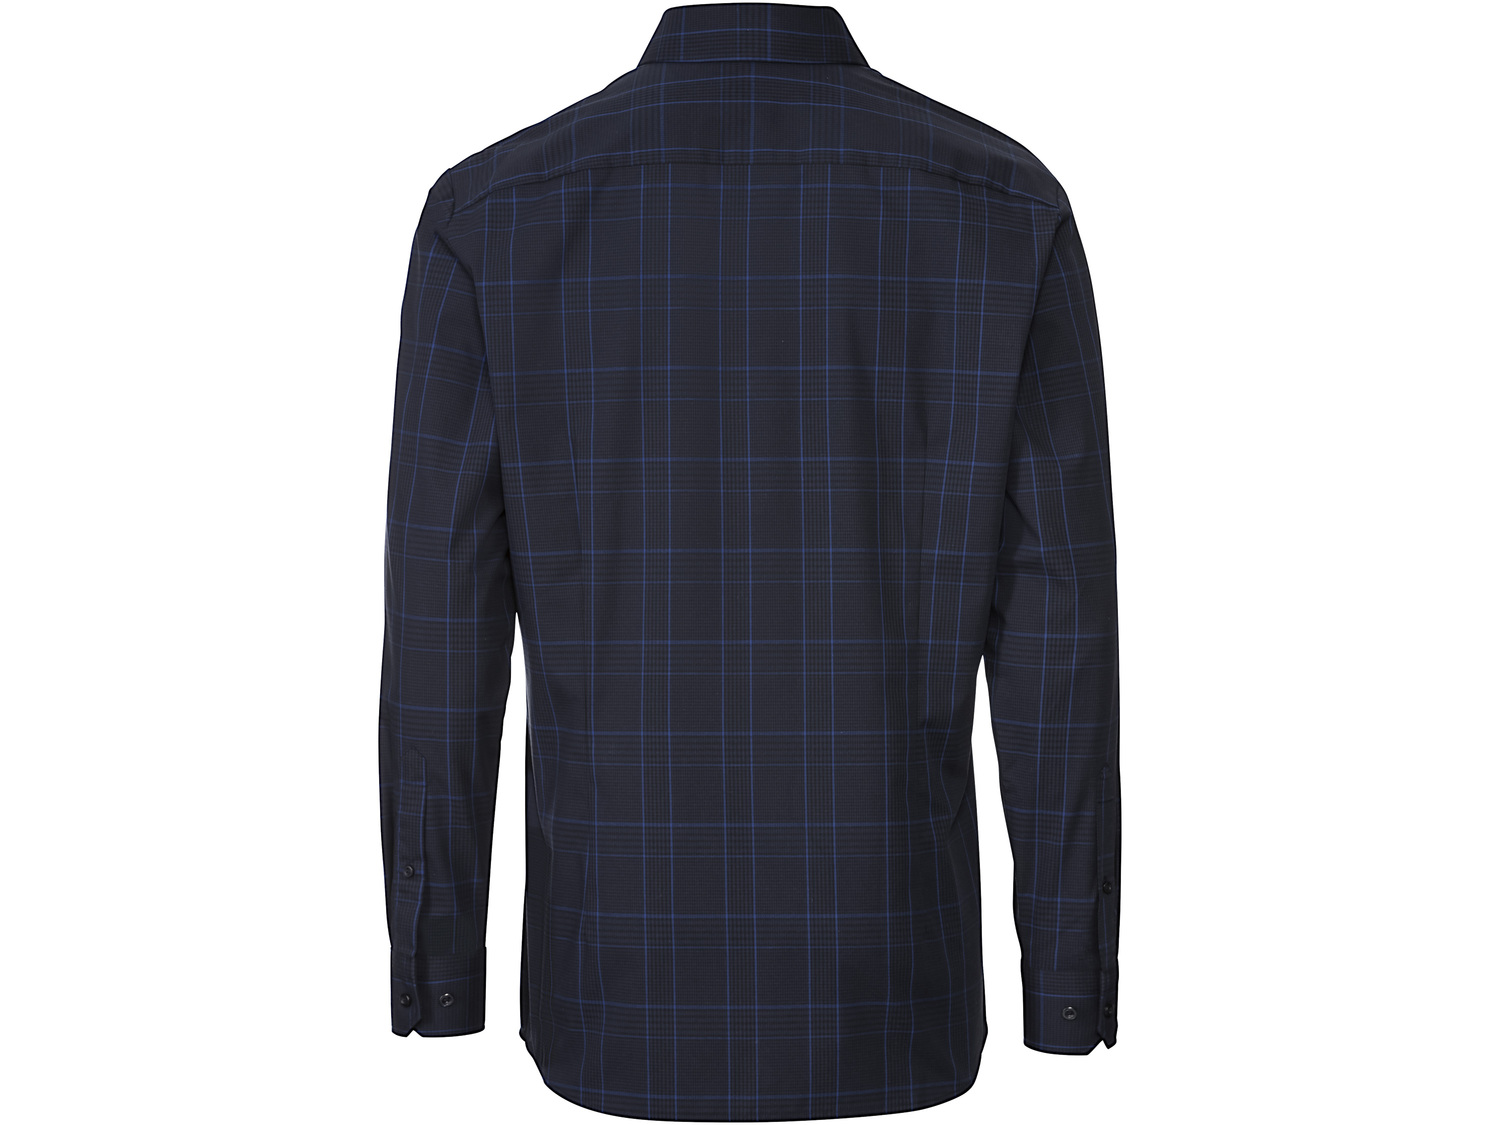 Koszula biznesowa męska , cena 49,99 PLN 
- rozmiary: 39-43
- taliowany krój
- ...